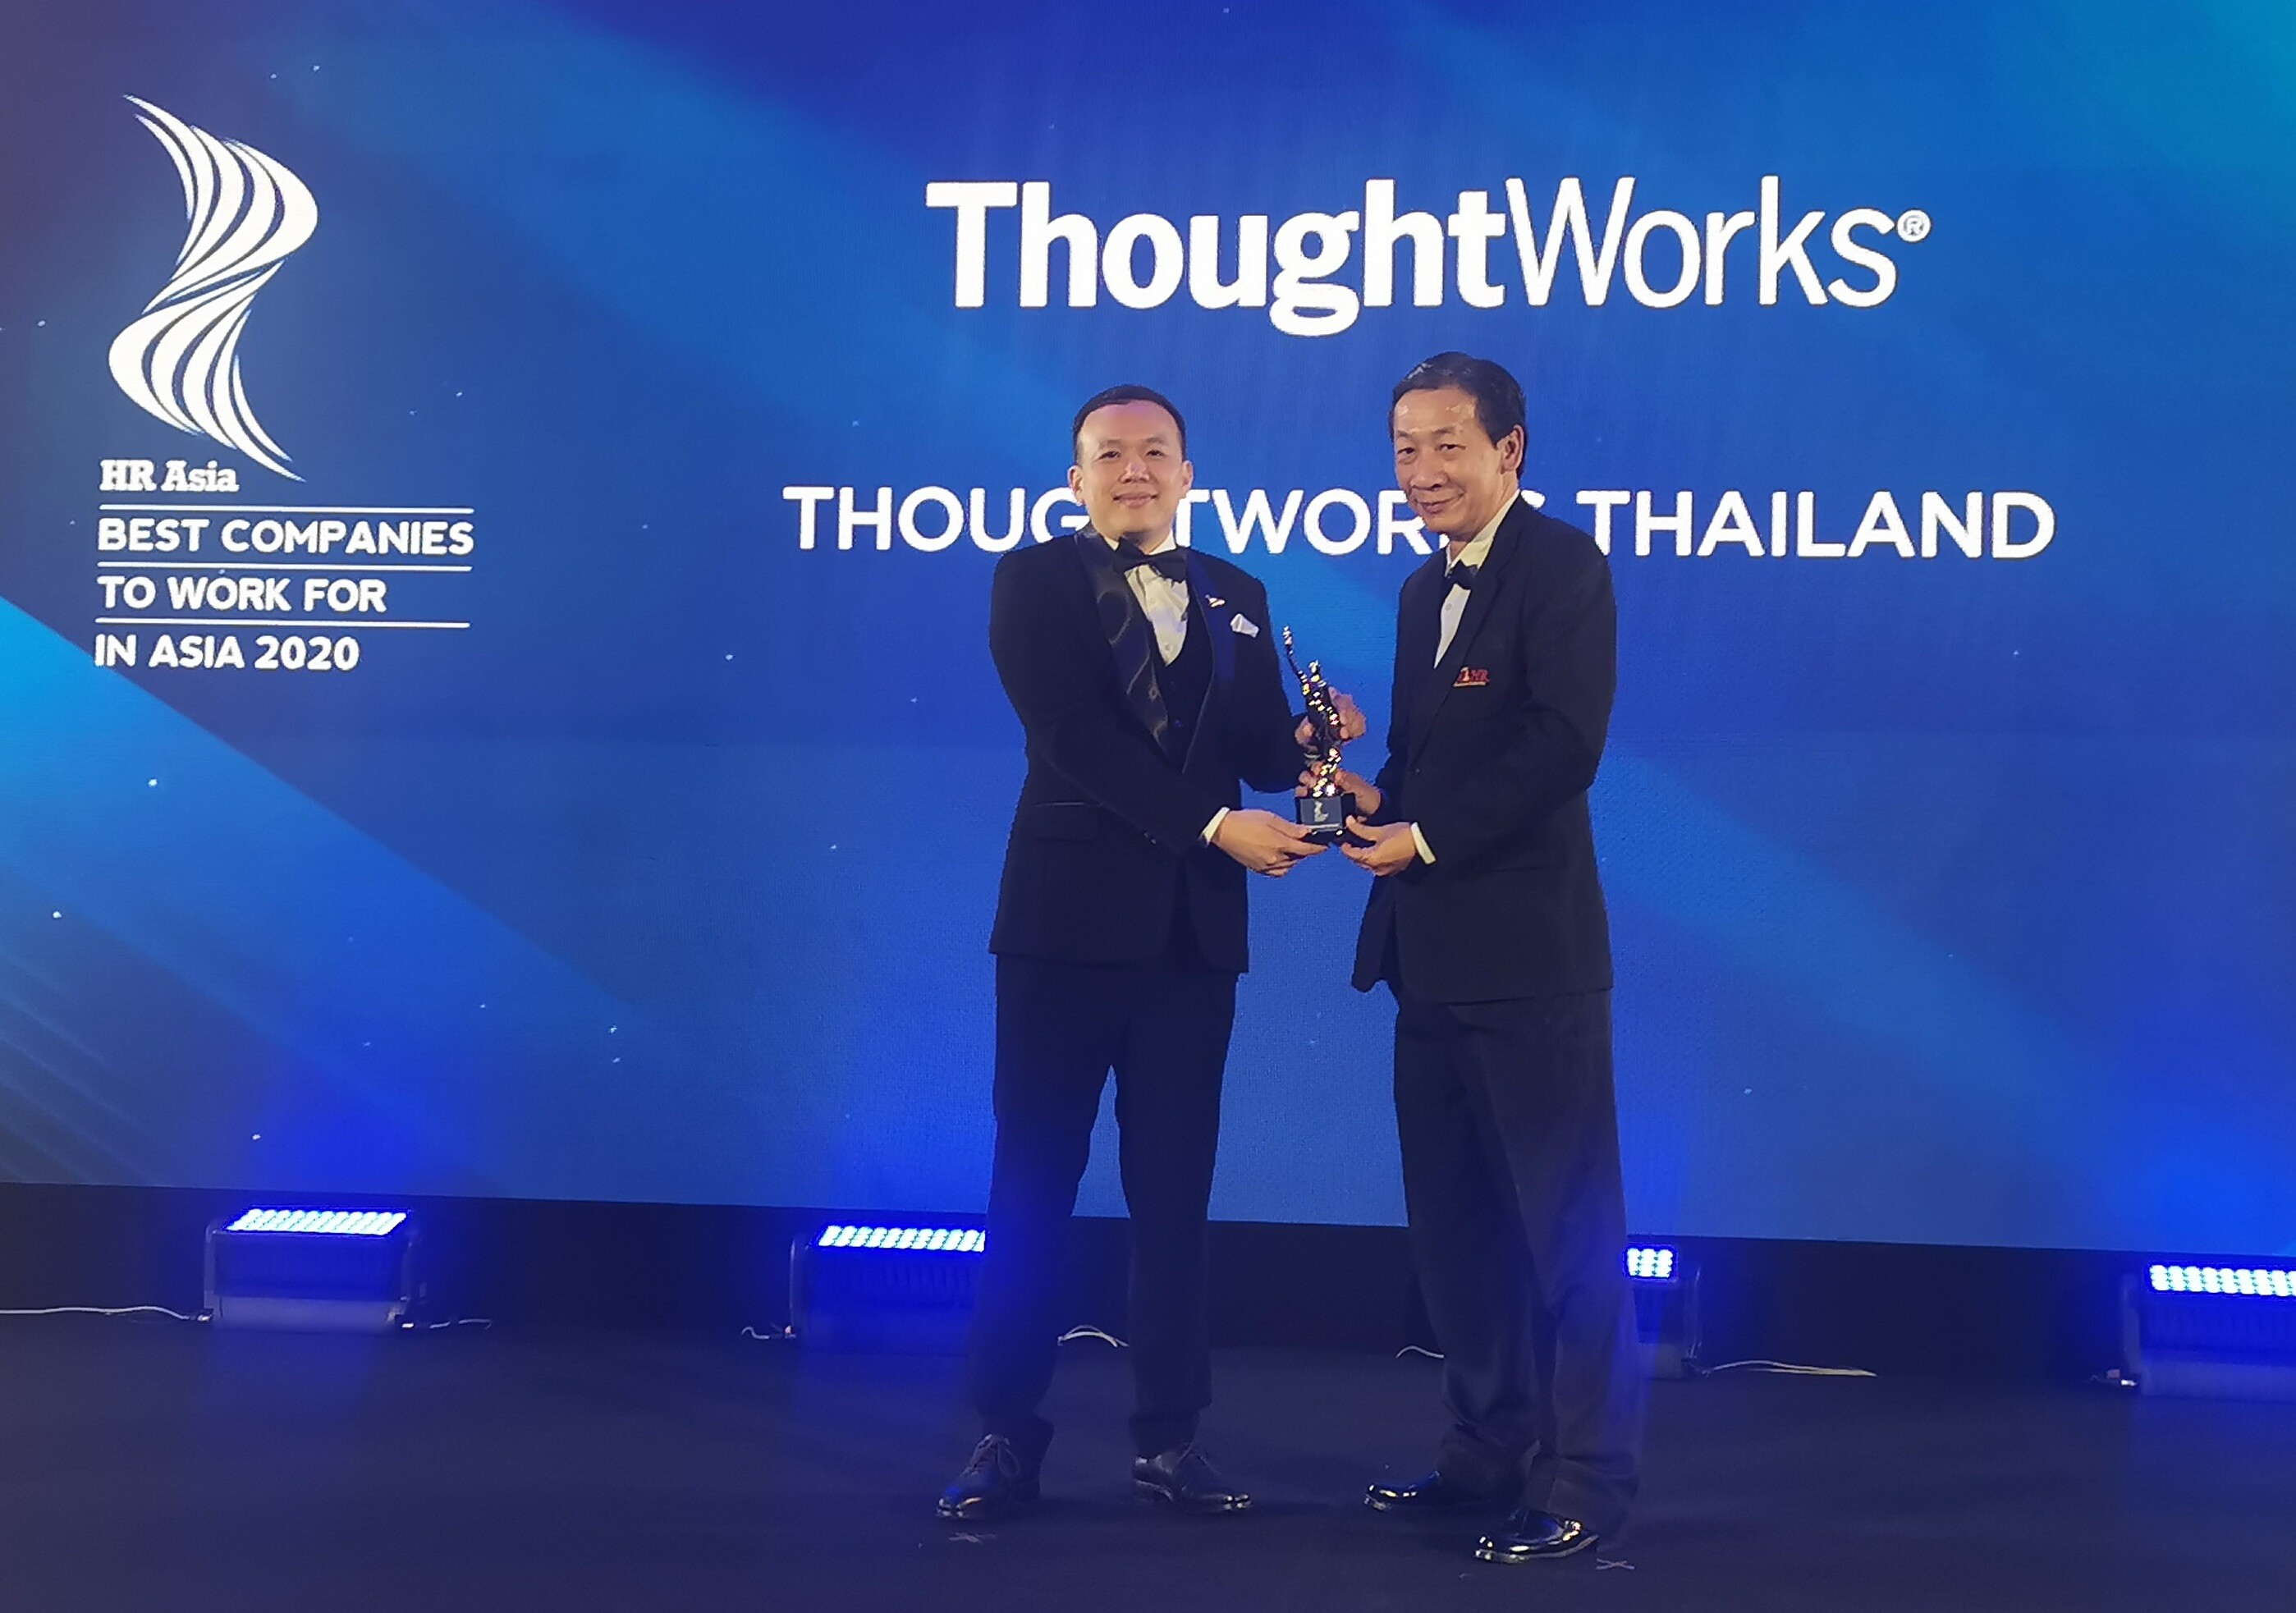 ThoughtWorks ประเทศไทย ได้รับรางวัล "บริษัทที่น่าทำงานมากที่สุด" ประจำปี 2563 โดย HR Asia